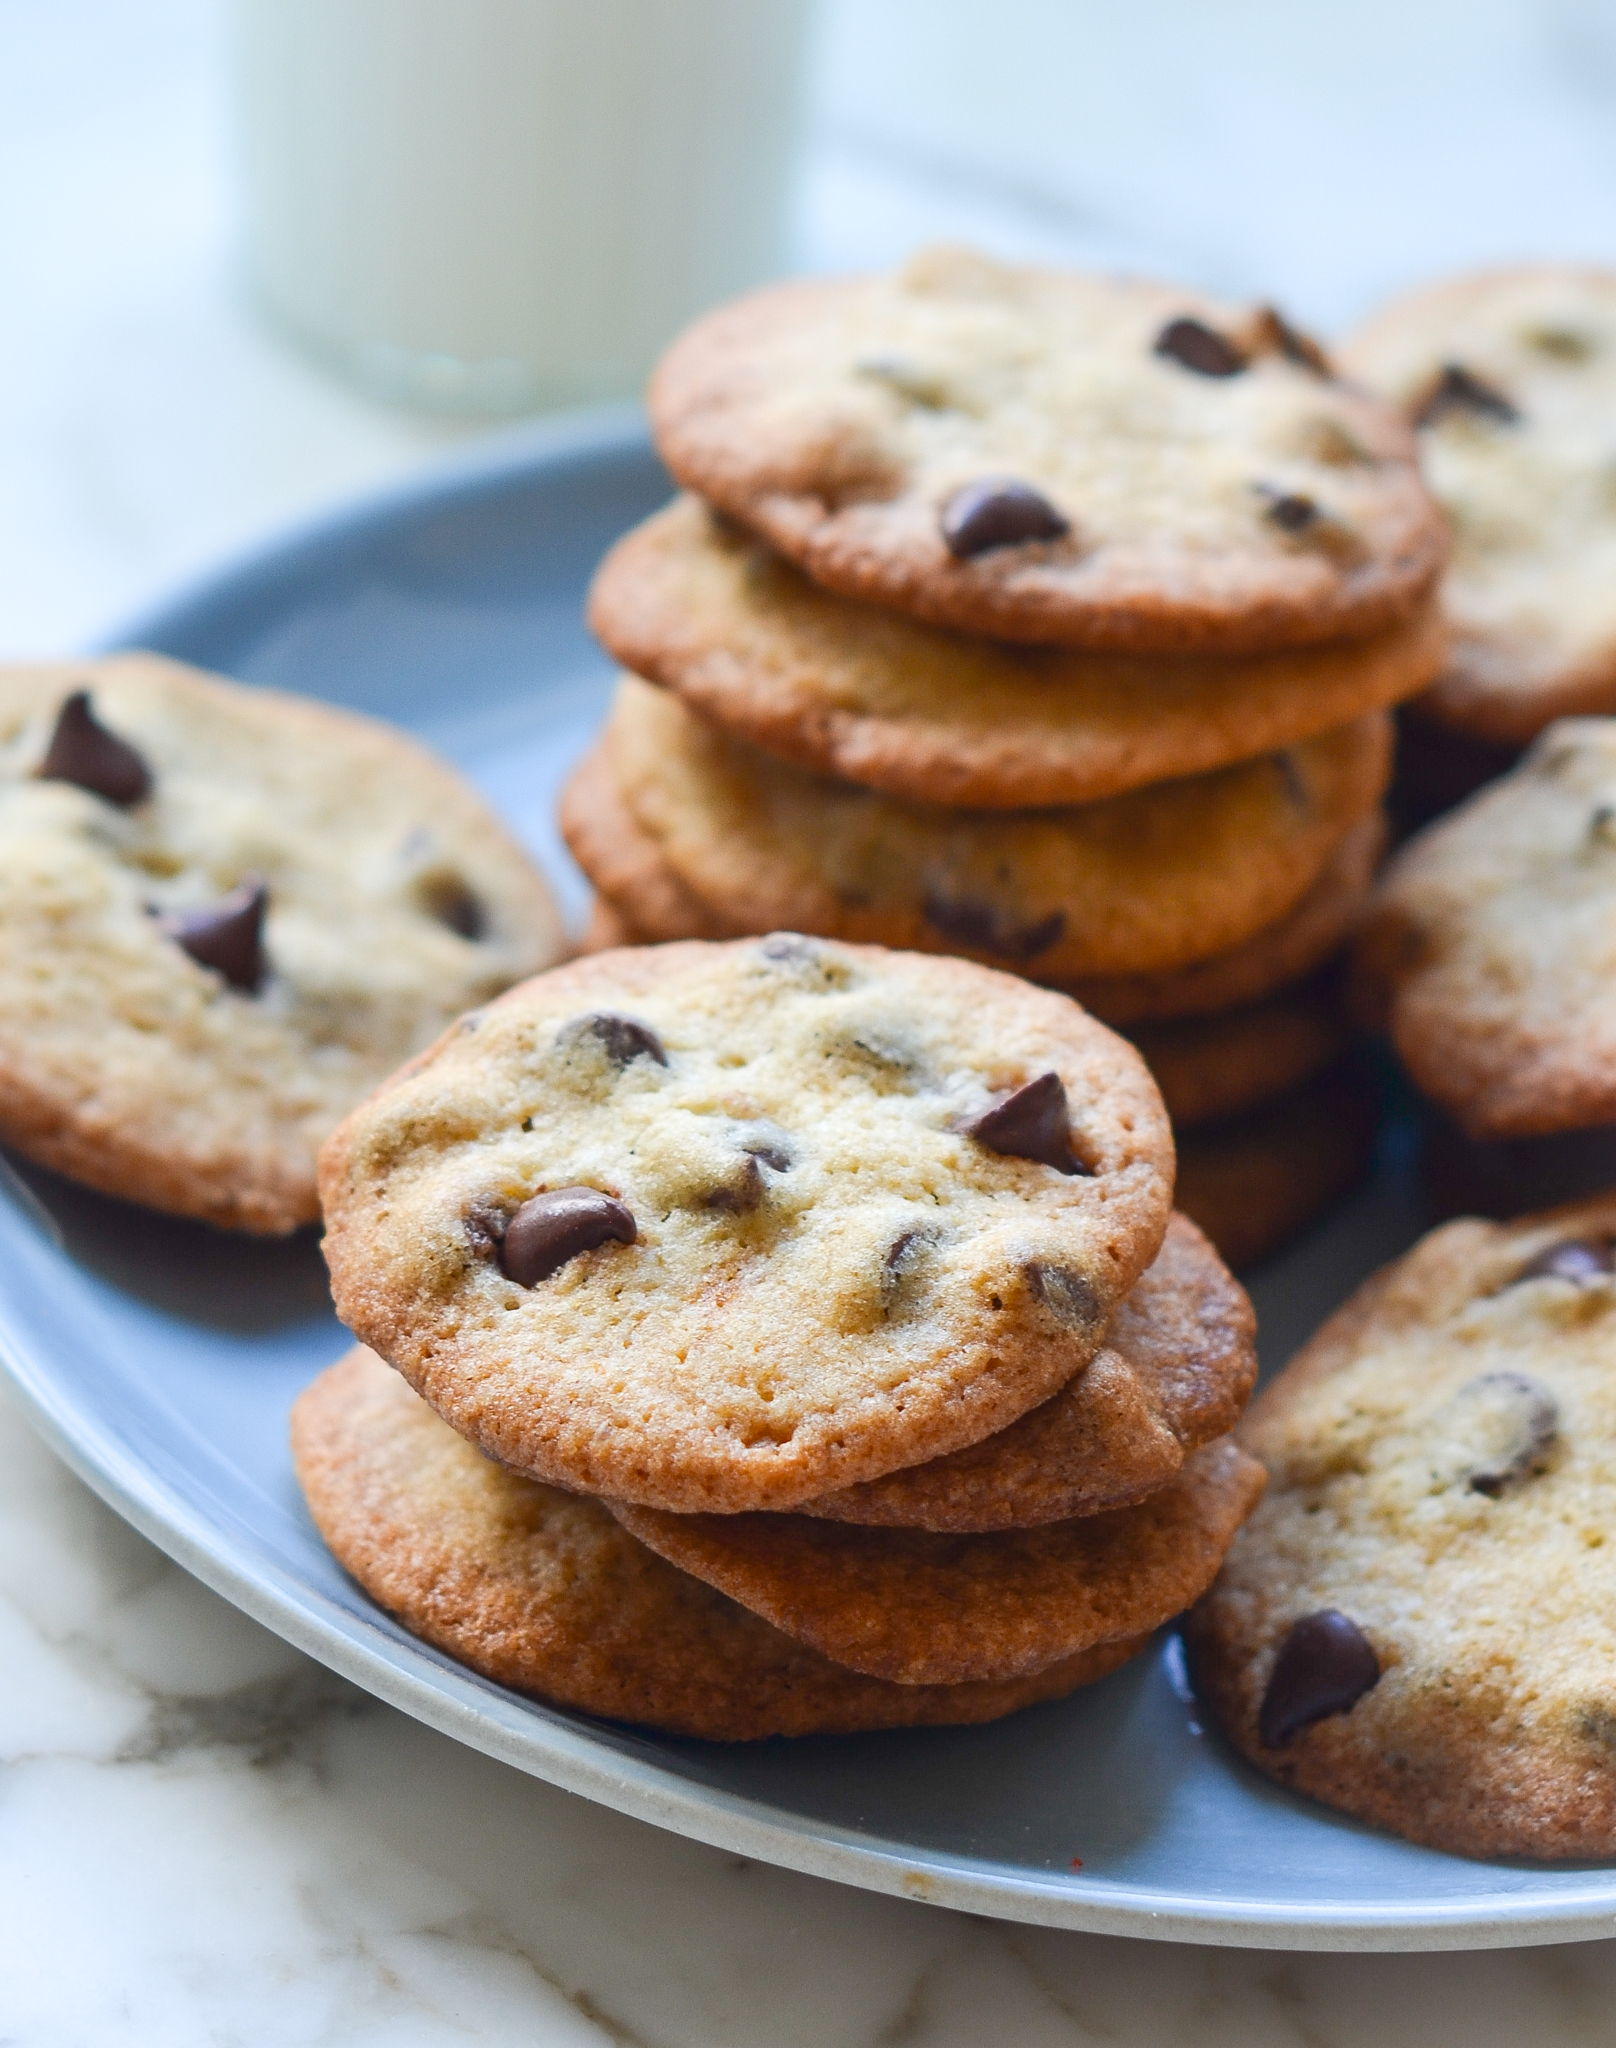 Buy Handmade Cookies Online: Cookies for Sale - Carol's Cookies